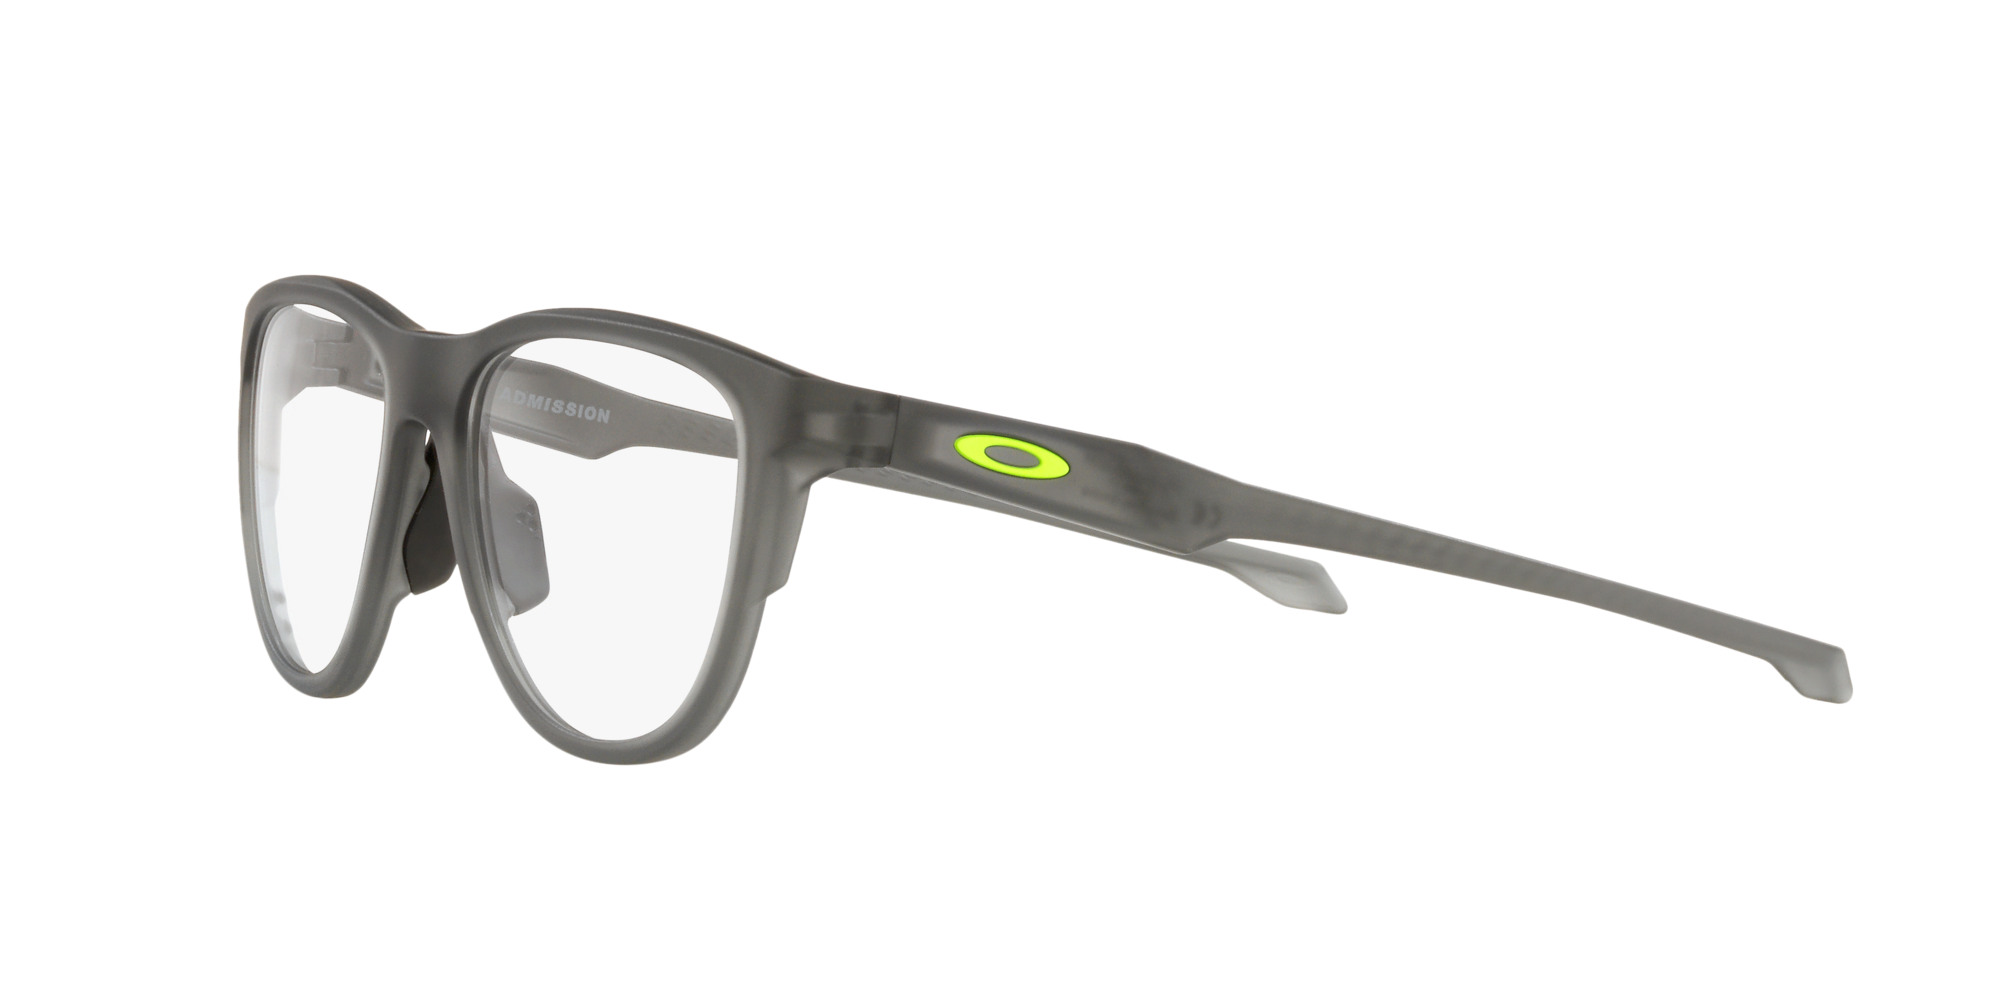 Das Bild zeigt die Korrektionsbrille OX8056 805602  von der Marke Oakley  in  grau rauch satiniert.